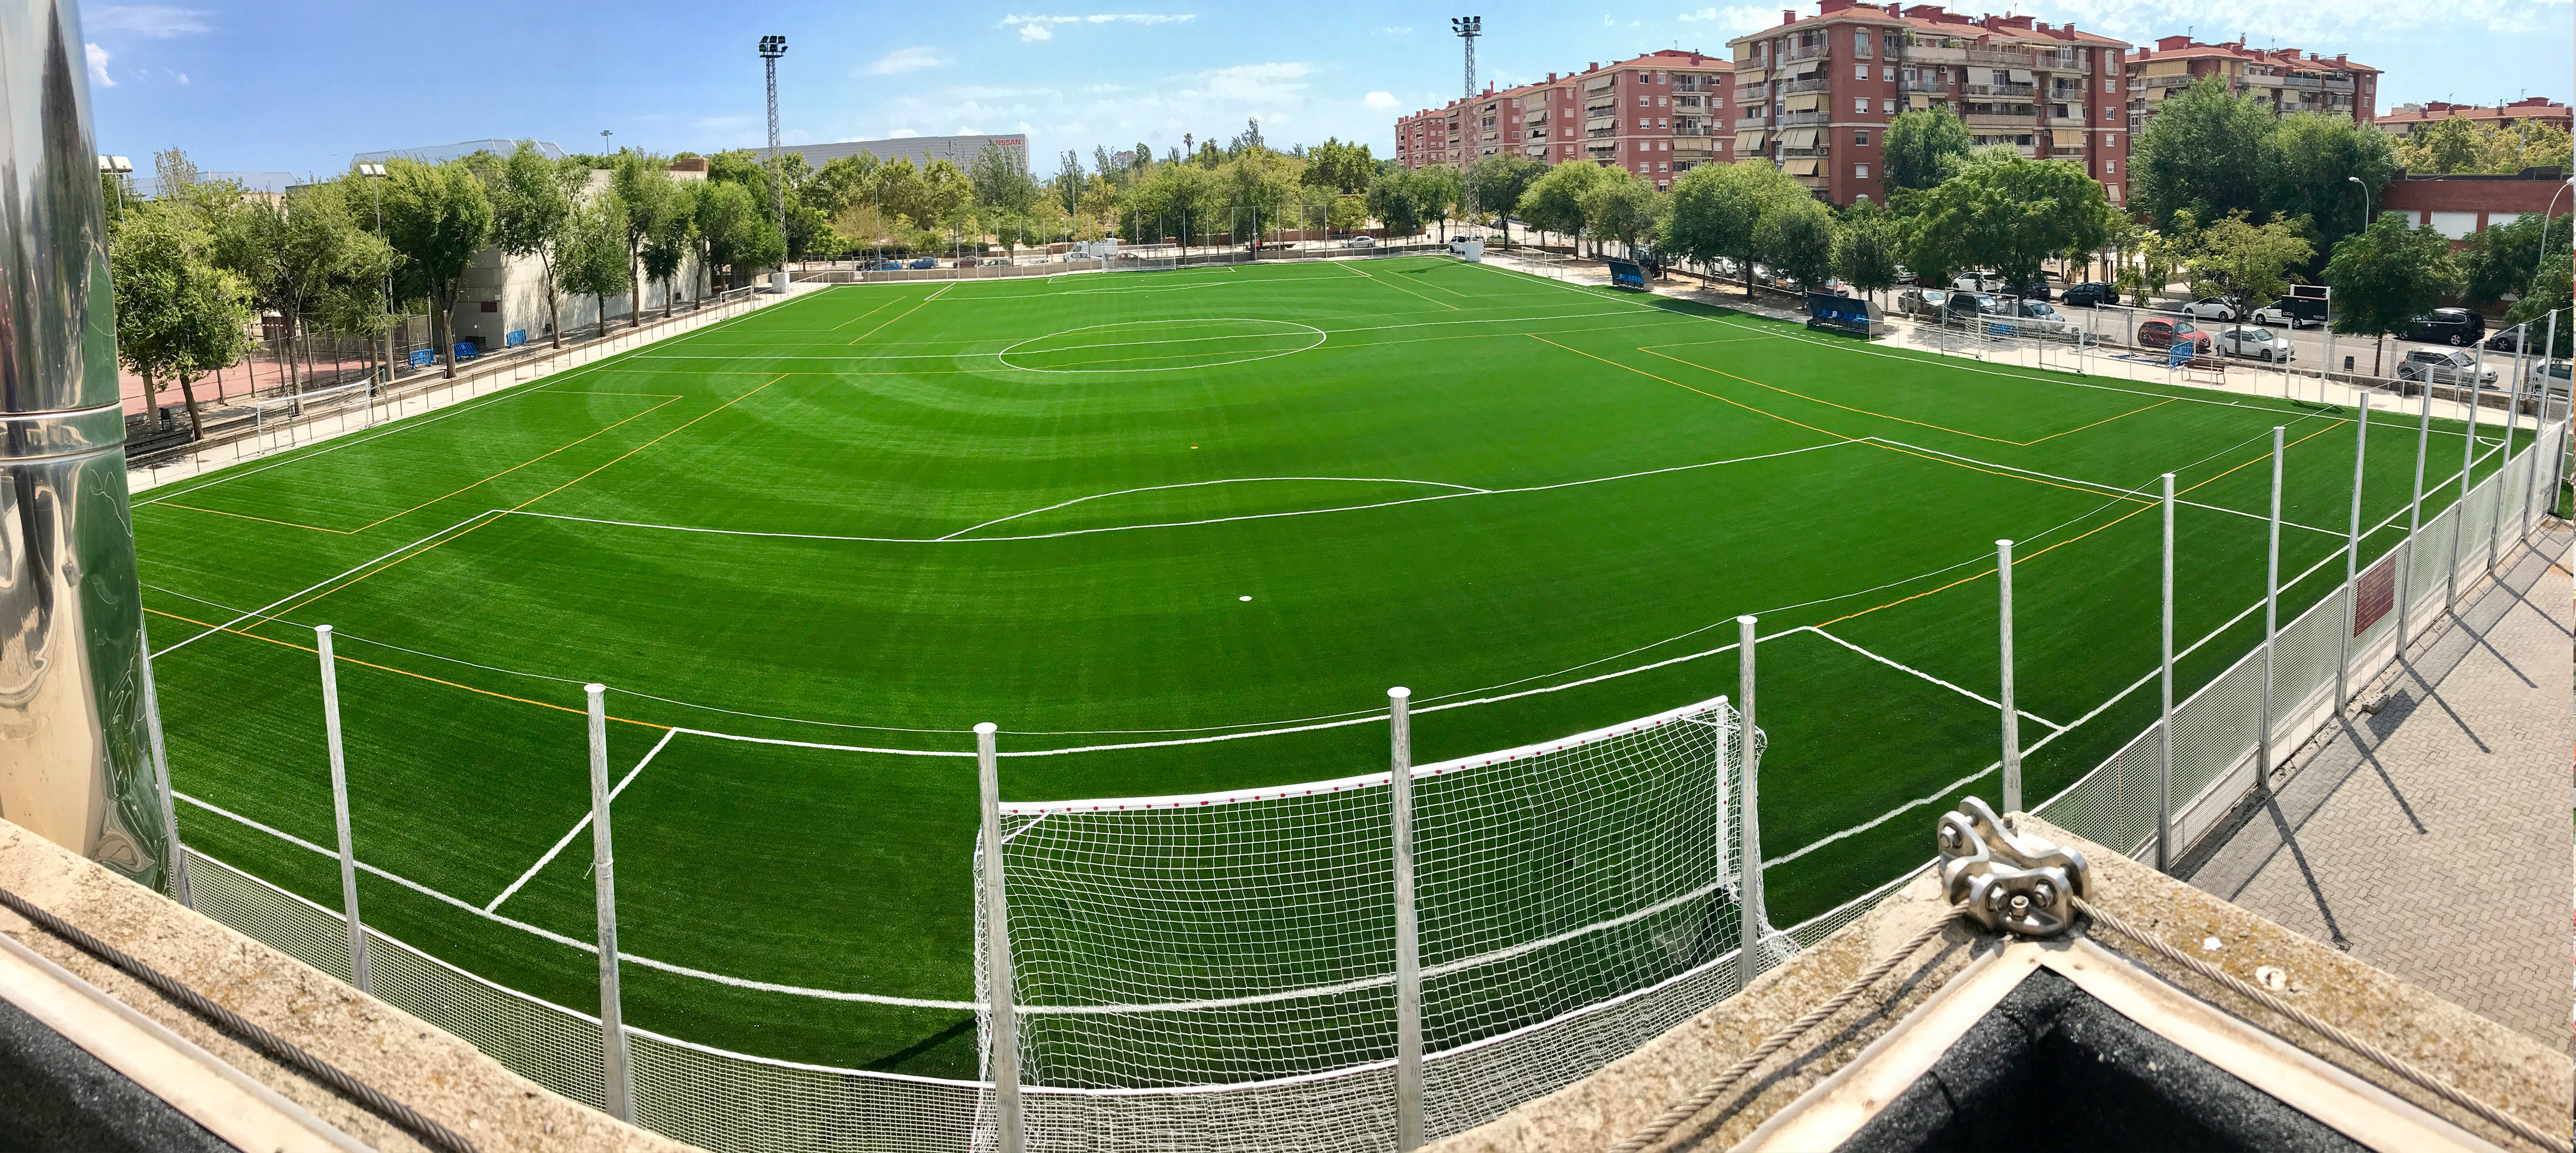 Camp de Fútbol en el C.E.M. Estruch, El Prat de Llobregat, Barcelona Image